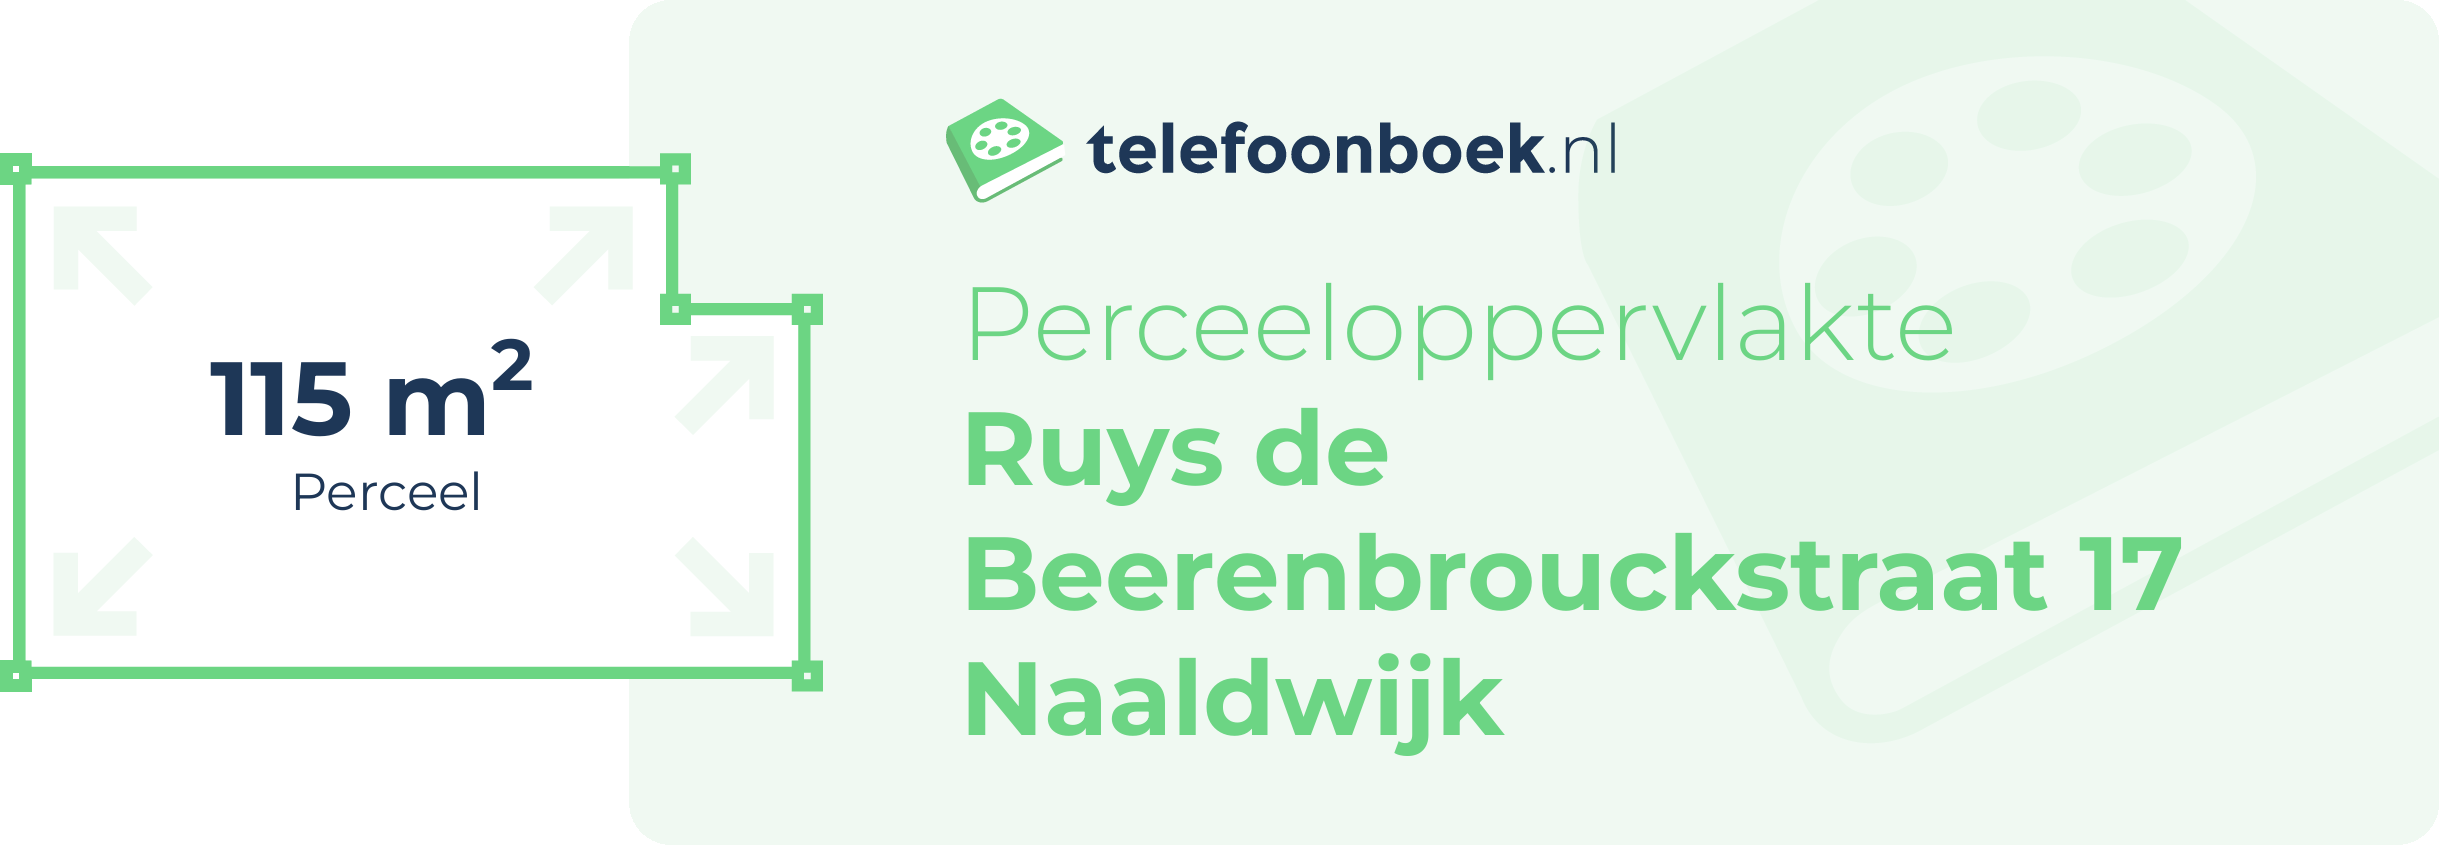 Perceeloppervlakte Ruys De Beerenbrouckstraat 17 Naaldwijk